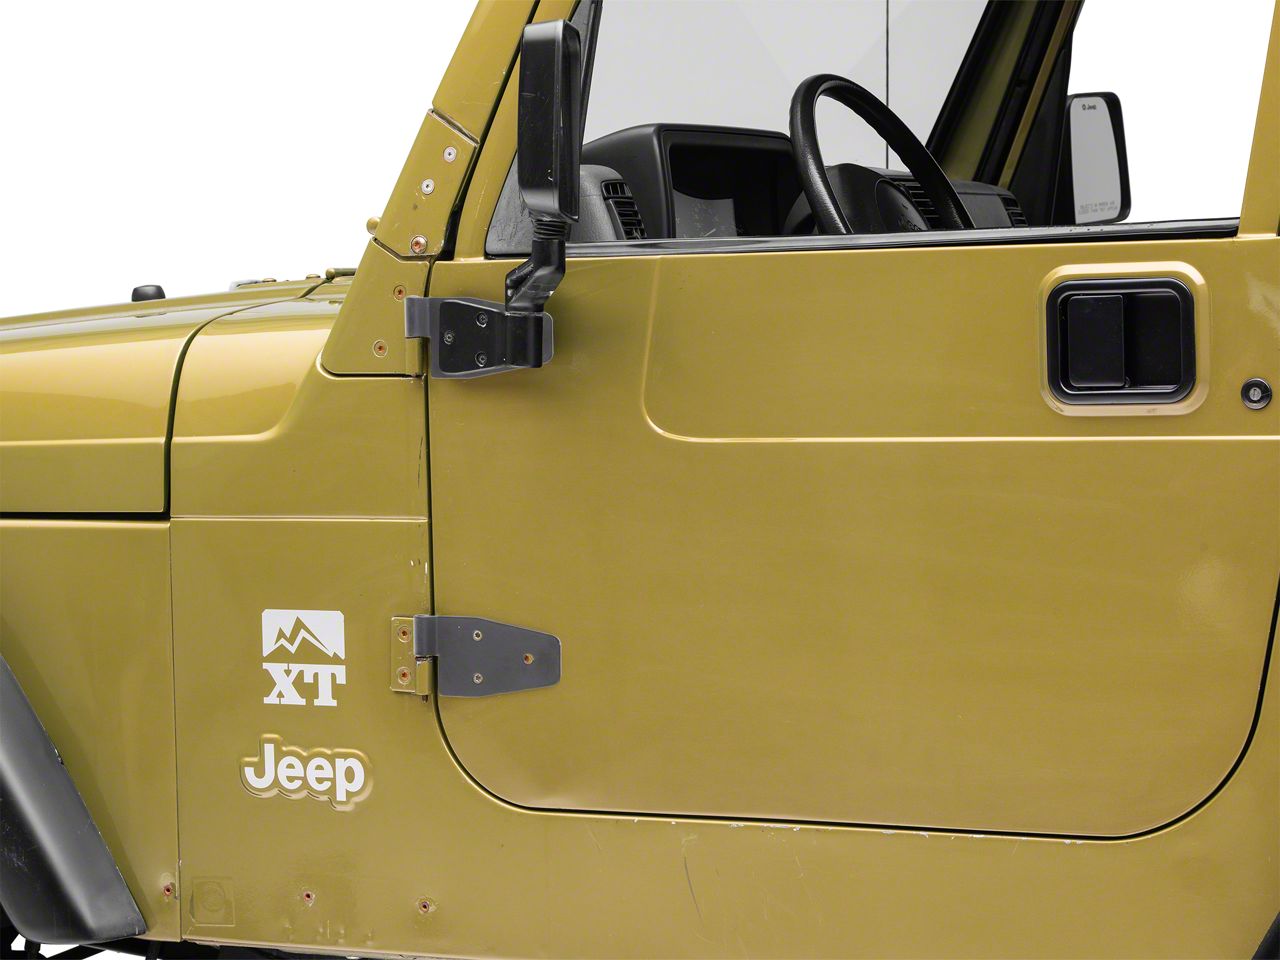 Smittybilt Jeep Wrangler Half/Full Door Hinges - Black 7641 (87-06 Jeep  Wrangler YJ & TJ w/ Half Steel Doors; 00-06 Jeep Wrangler TJ w/ Full Steel  Doors)